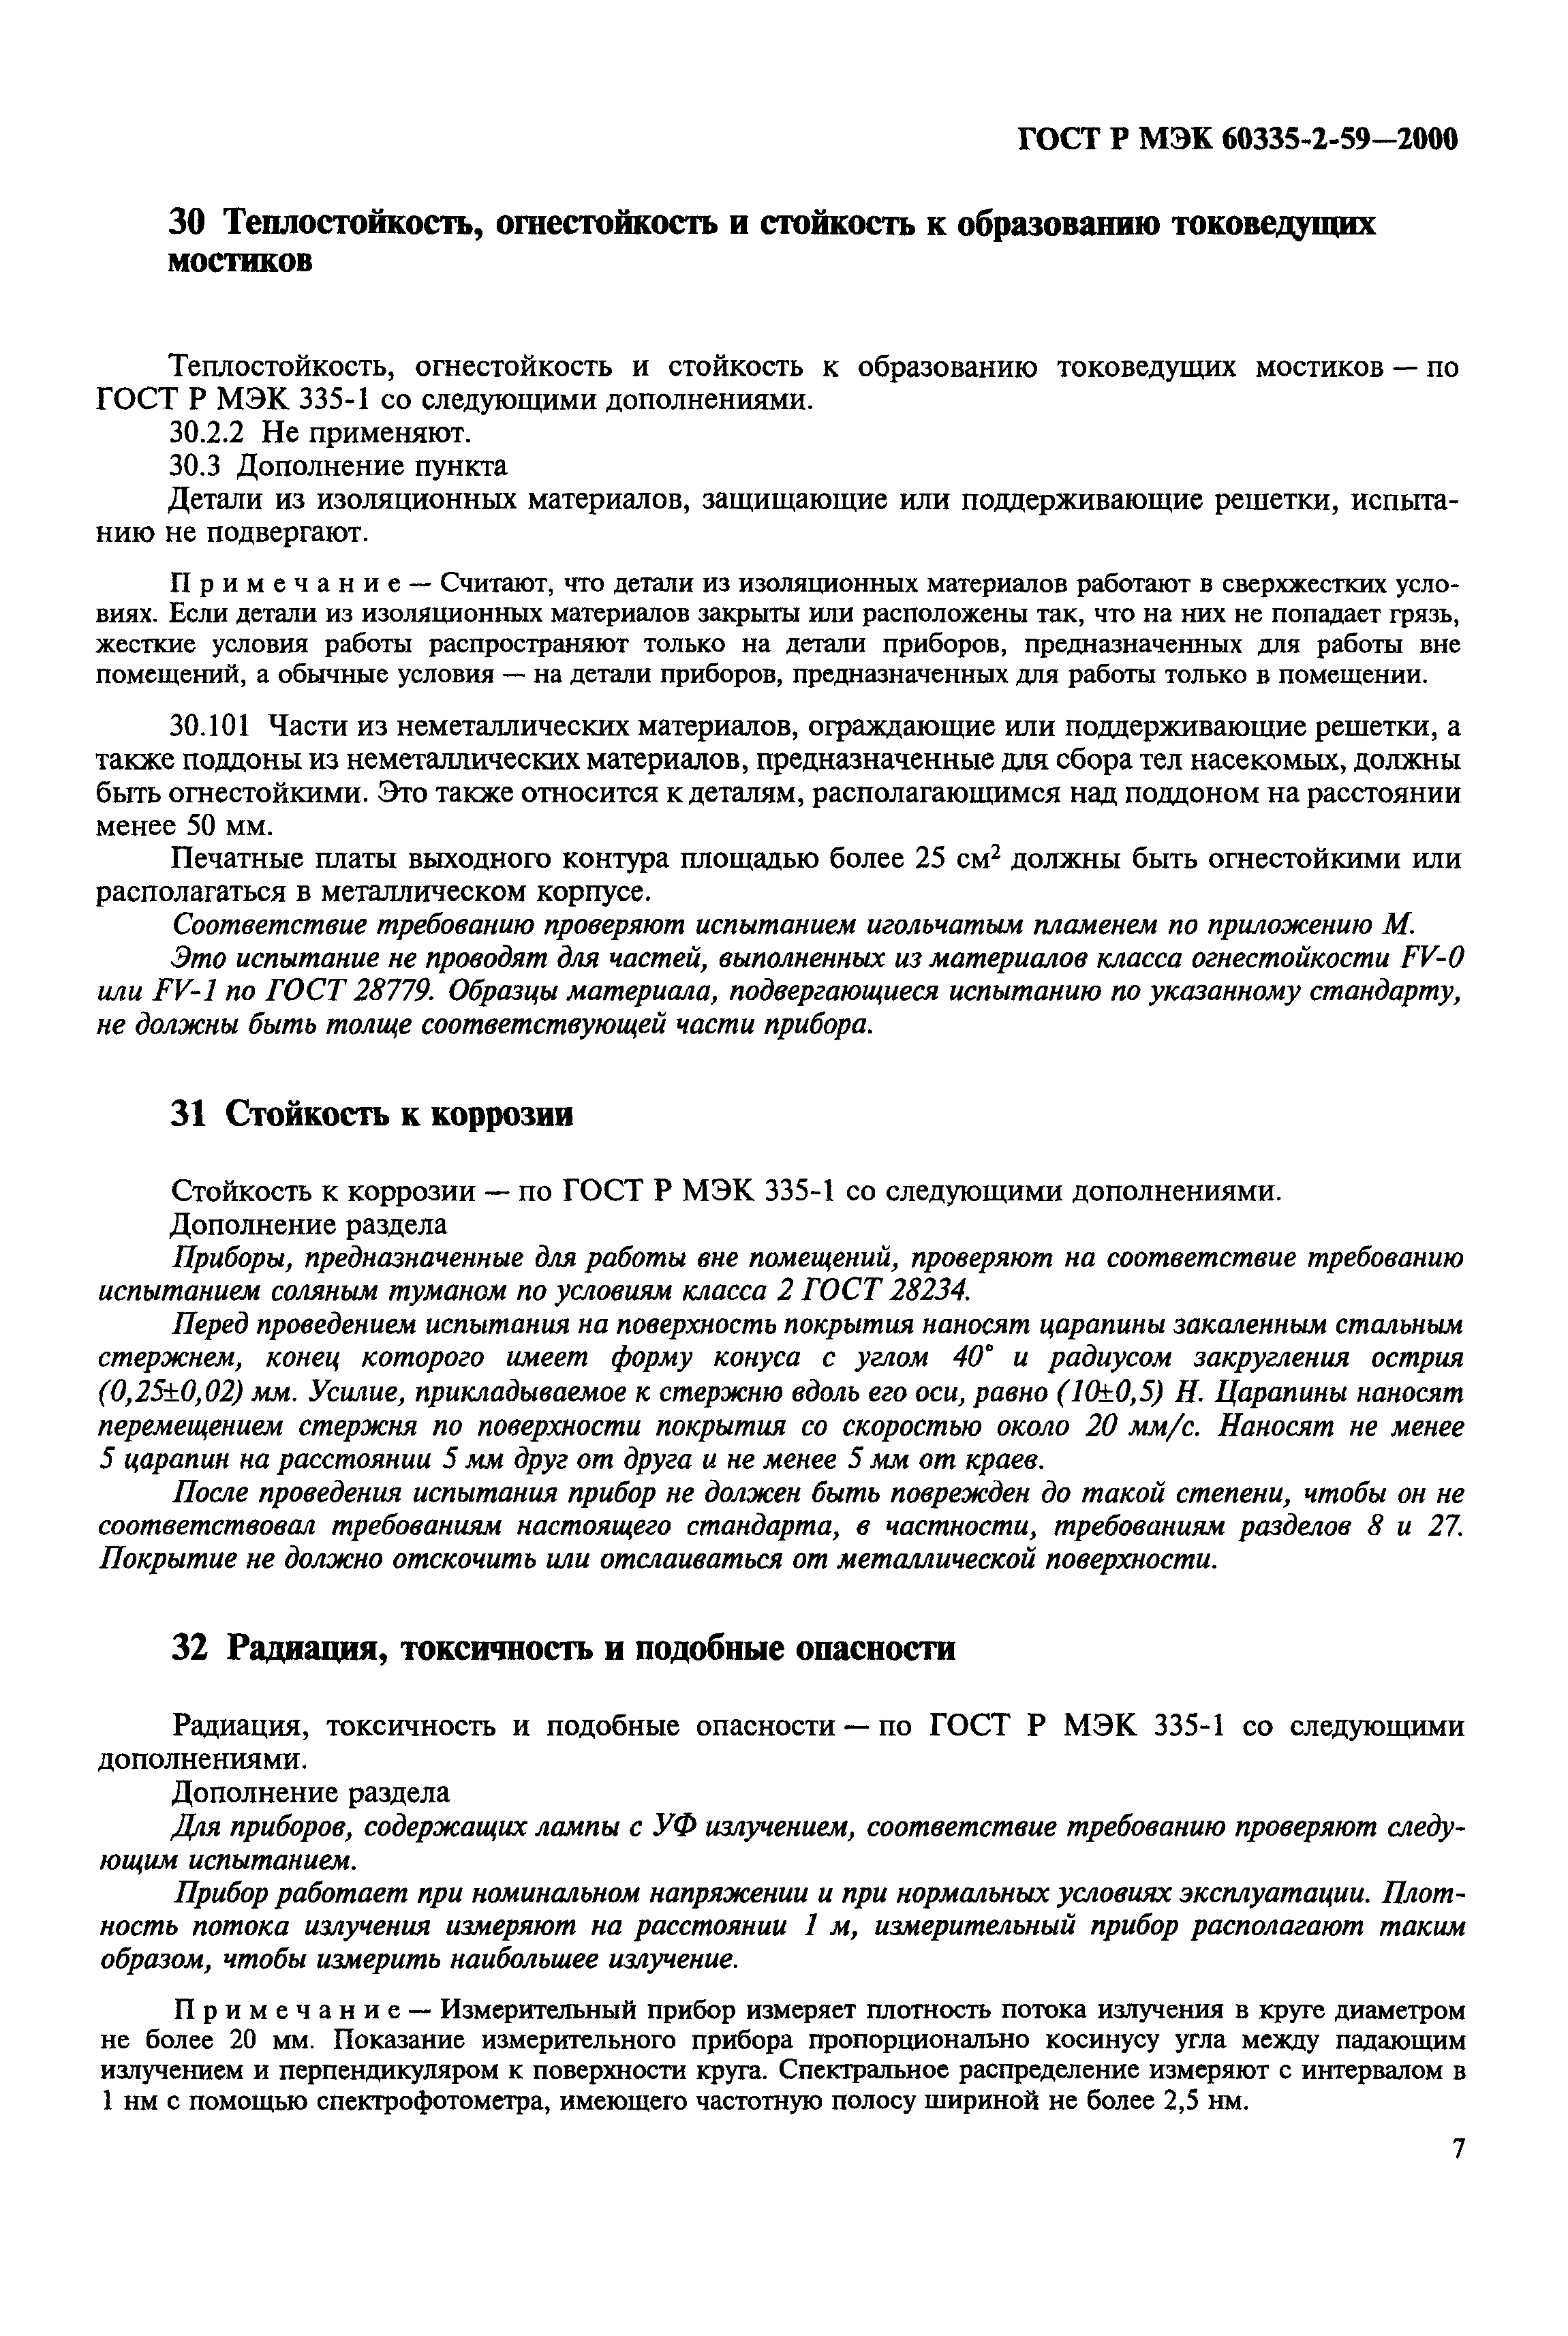 ГОСТ Р МЭК 60335-2-59-2000